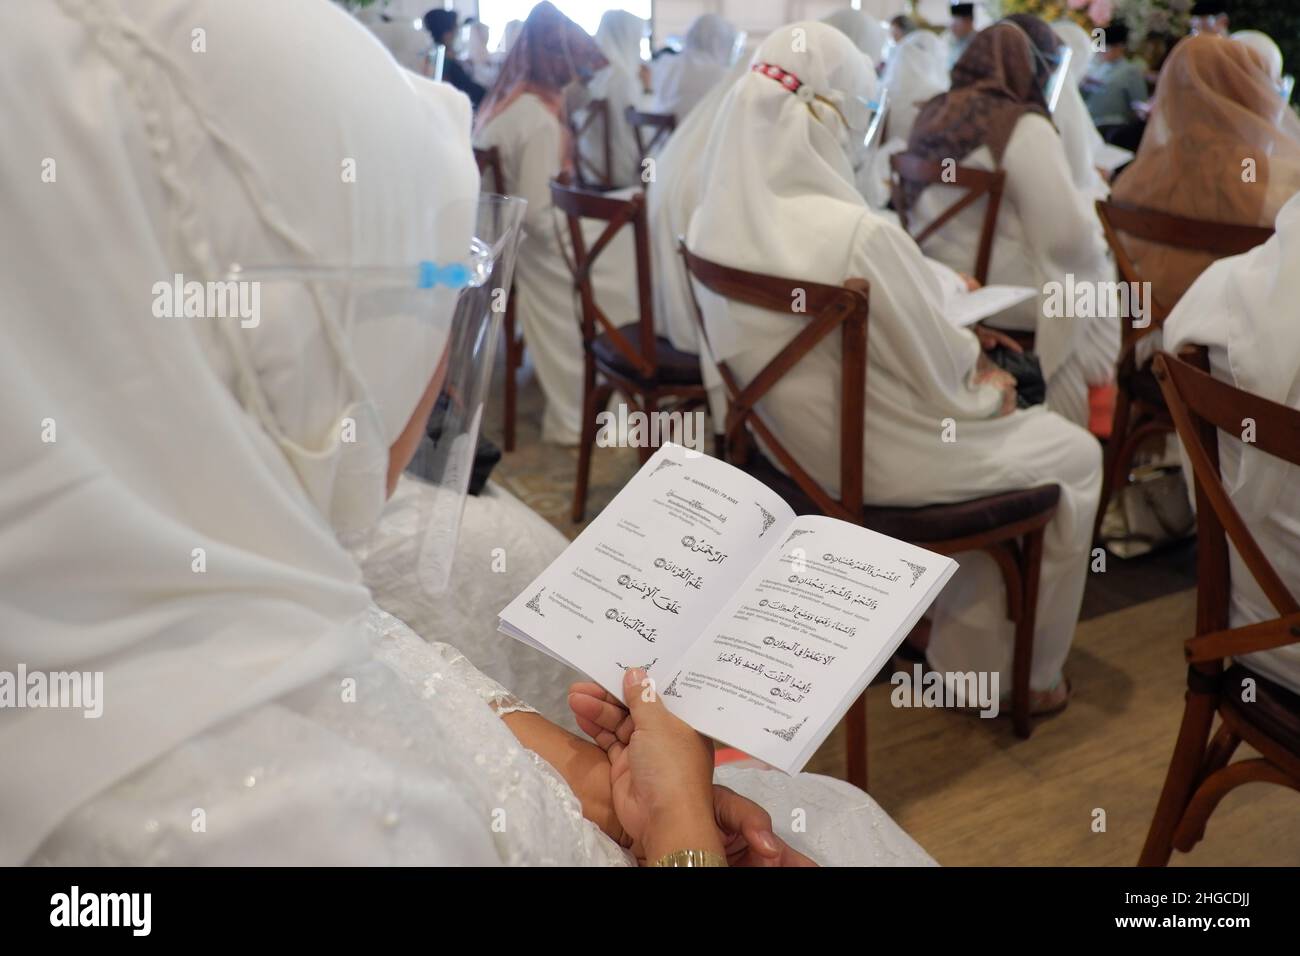 Jakarta, Indonesien - Dezember 2020 : Eine Gruppe muslimischer Frauen trägt eine Gesichtsmaske und liest in einem Raum Gebetsbücher Stockfoto